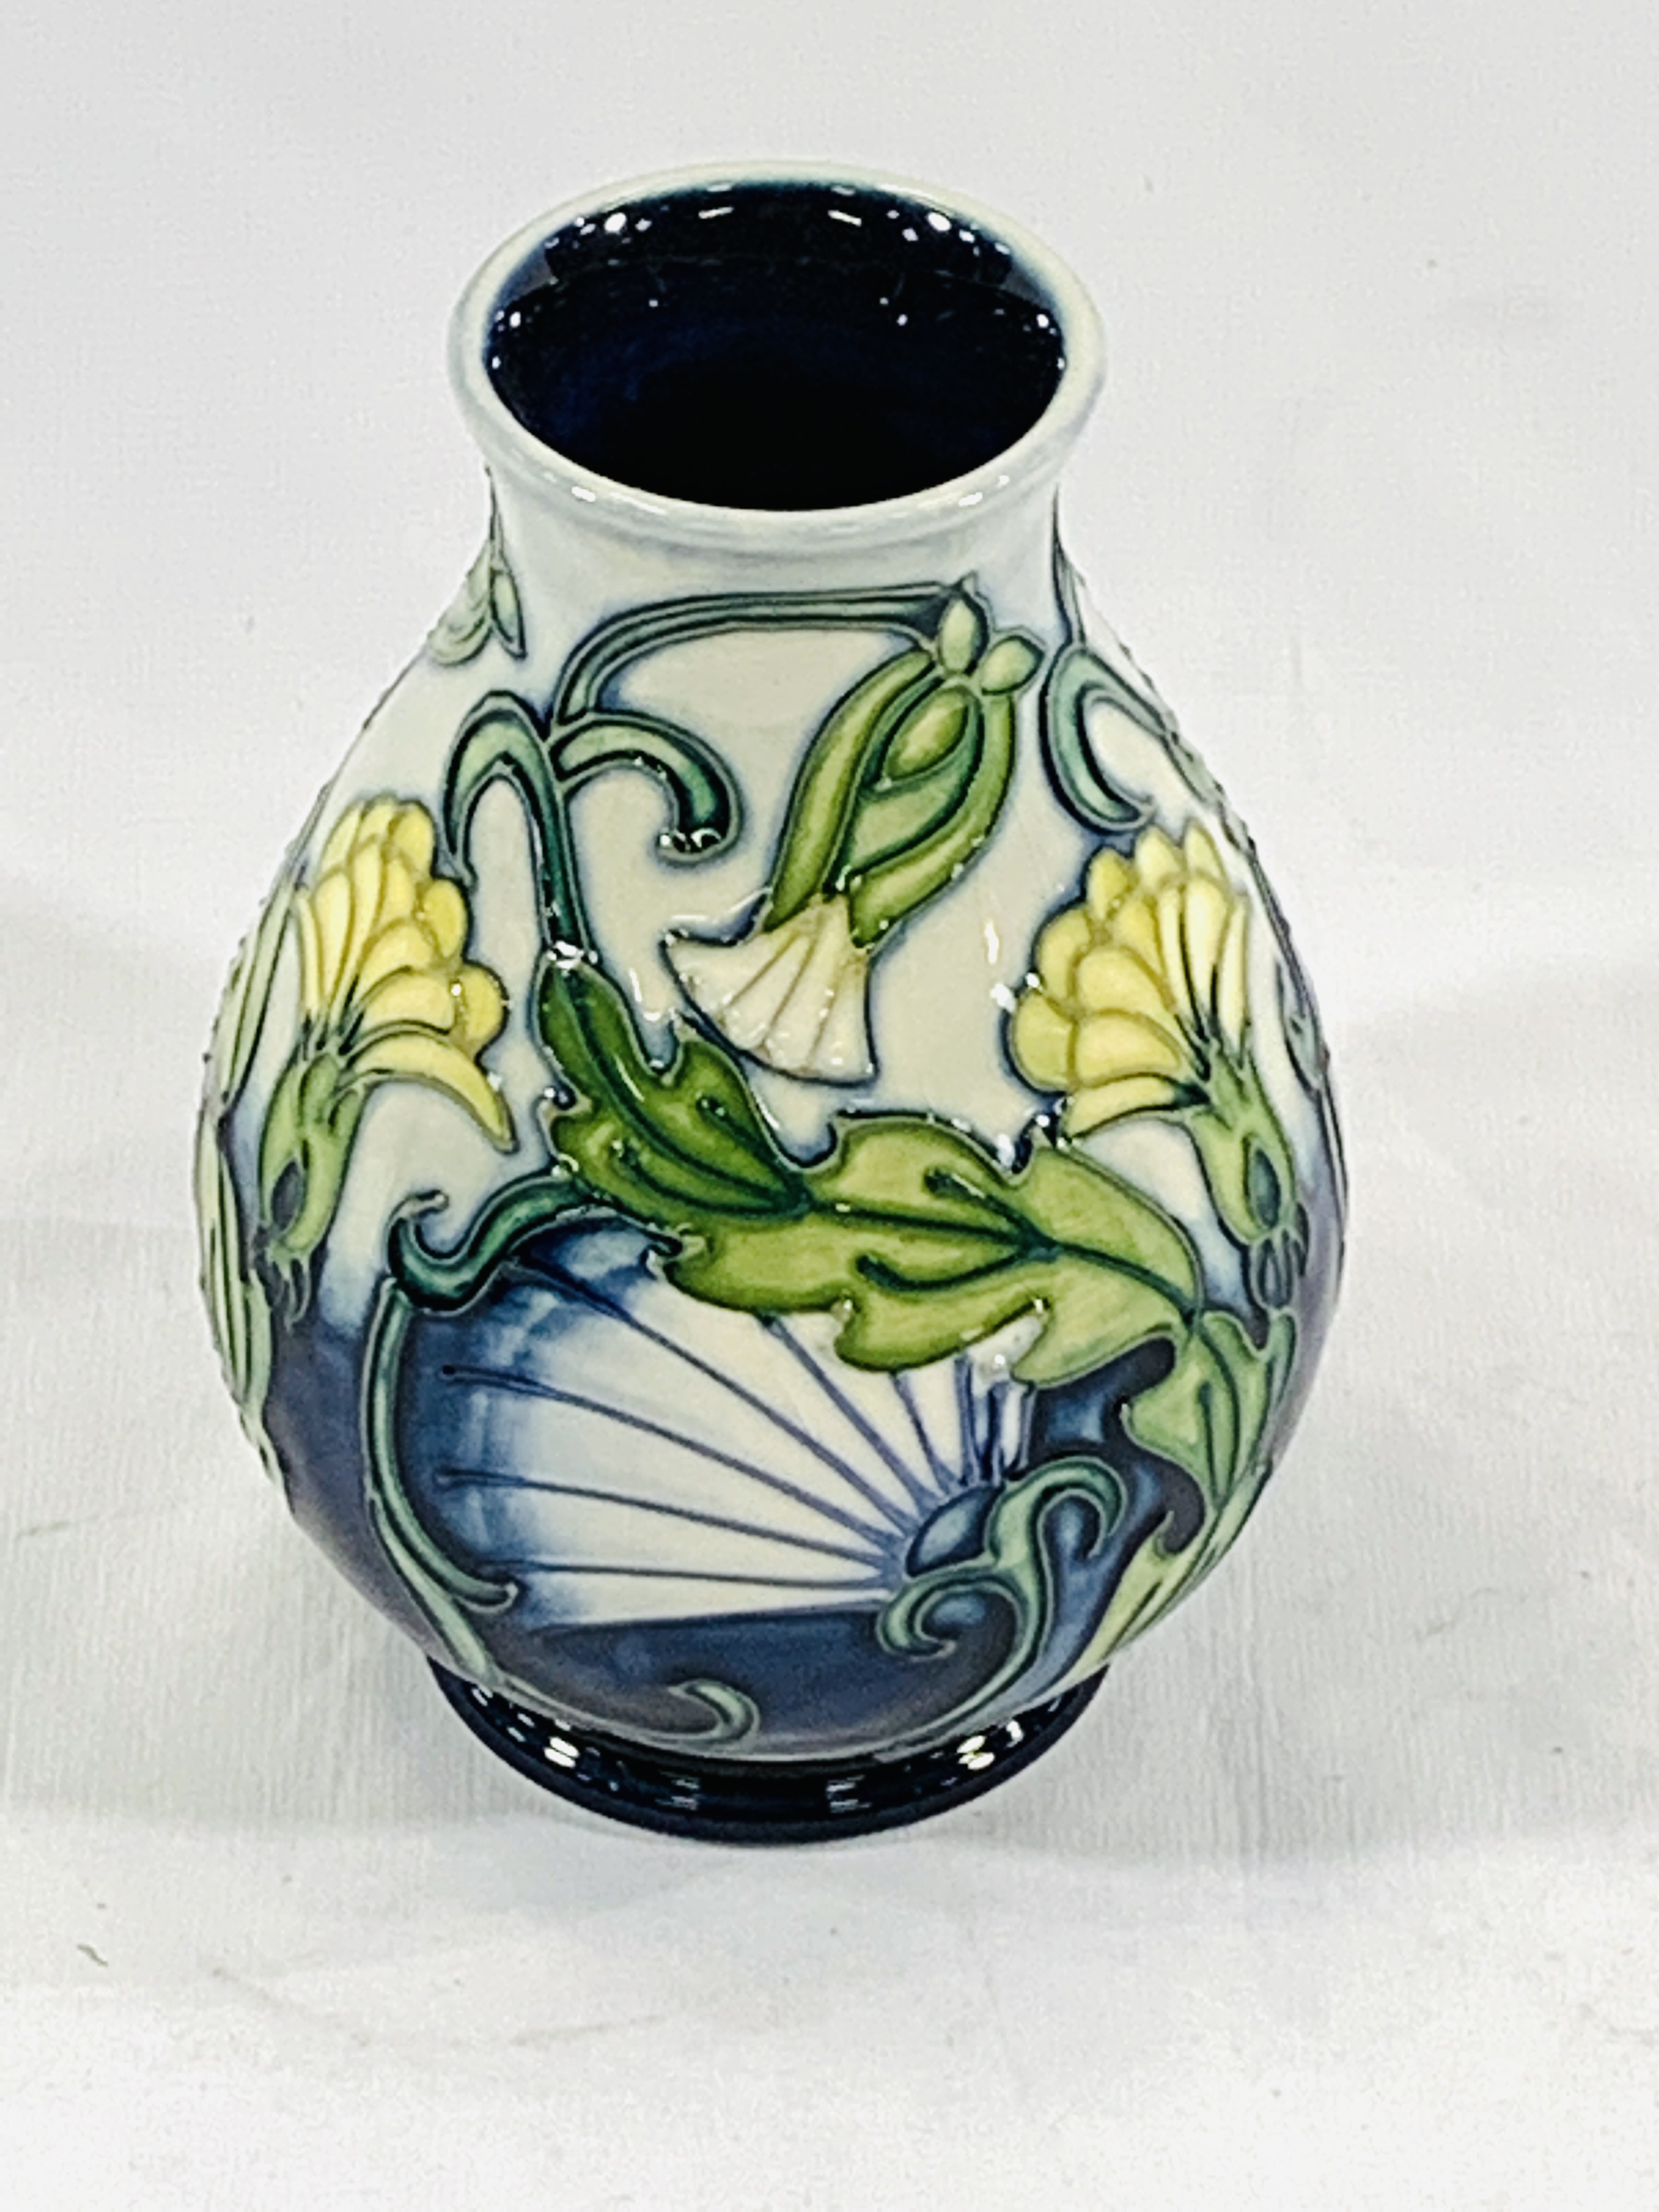 Boxed Moorcroft vase - Image 2 of 4